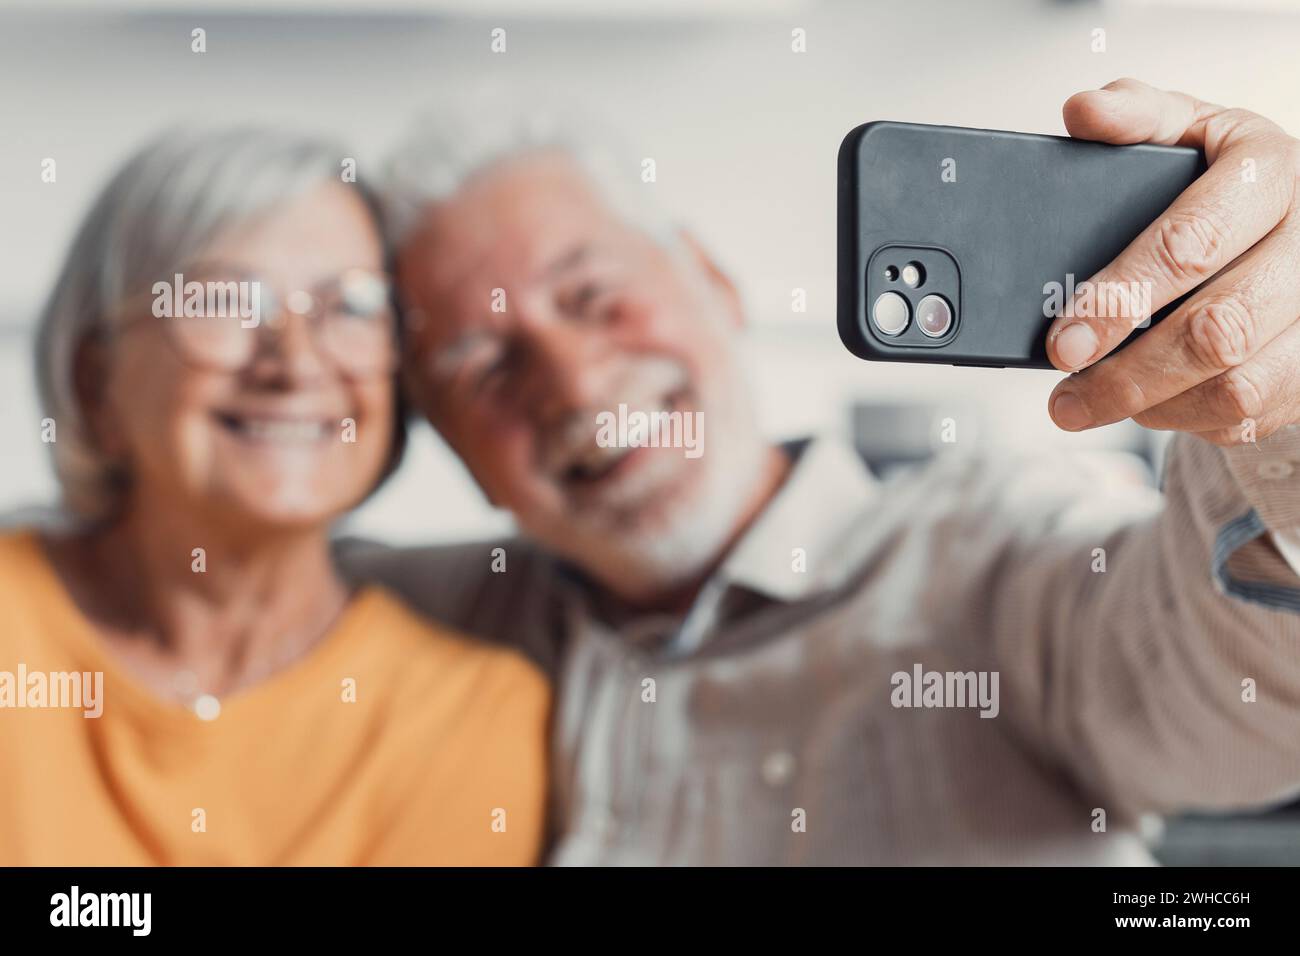 Una vecchia coppia felice che scatta selfie al cellulare, sposi anziani e maturi sorridenti, moglie di mezza età e marito in pensione che ridono tenendo il telefono, realizza un autoritratto sulla fotocamera dello smartphone, concentrandoti sul display del cellulare Foto Stock